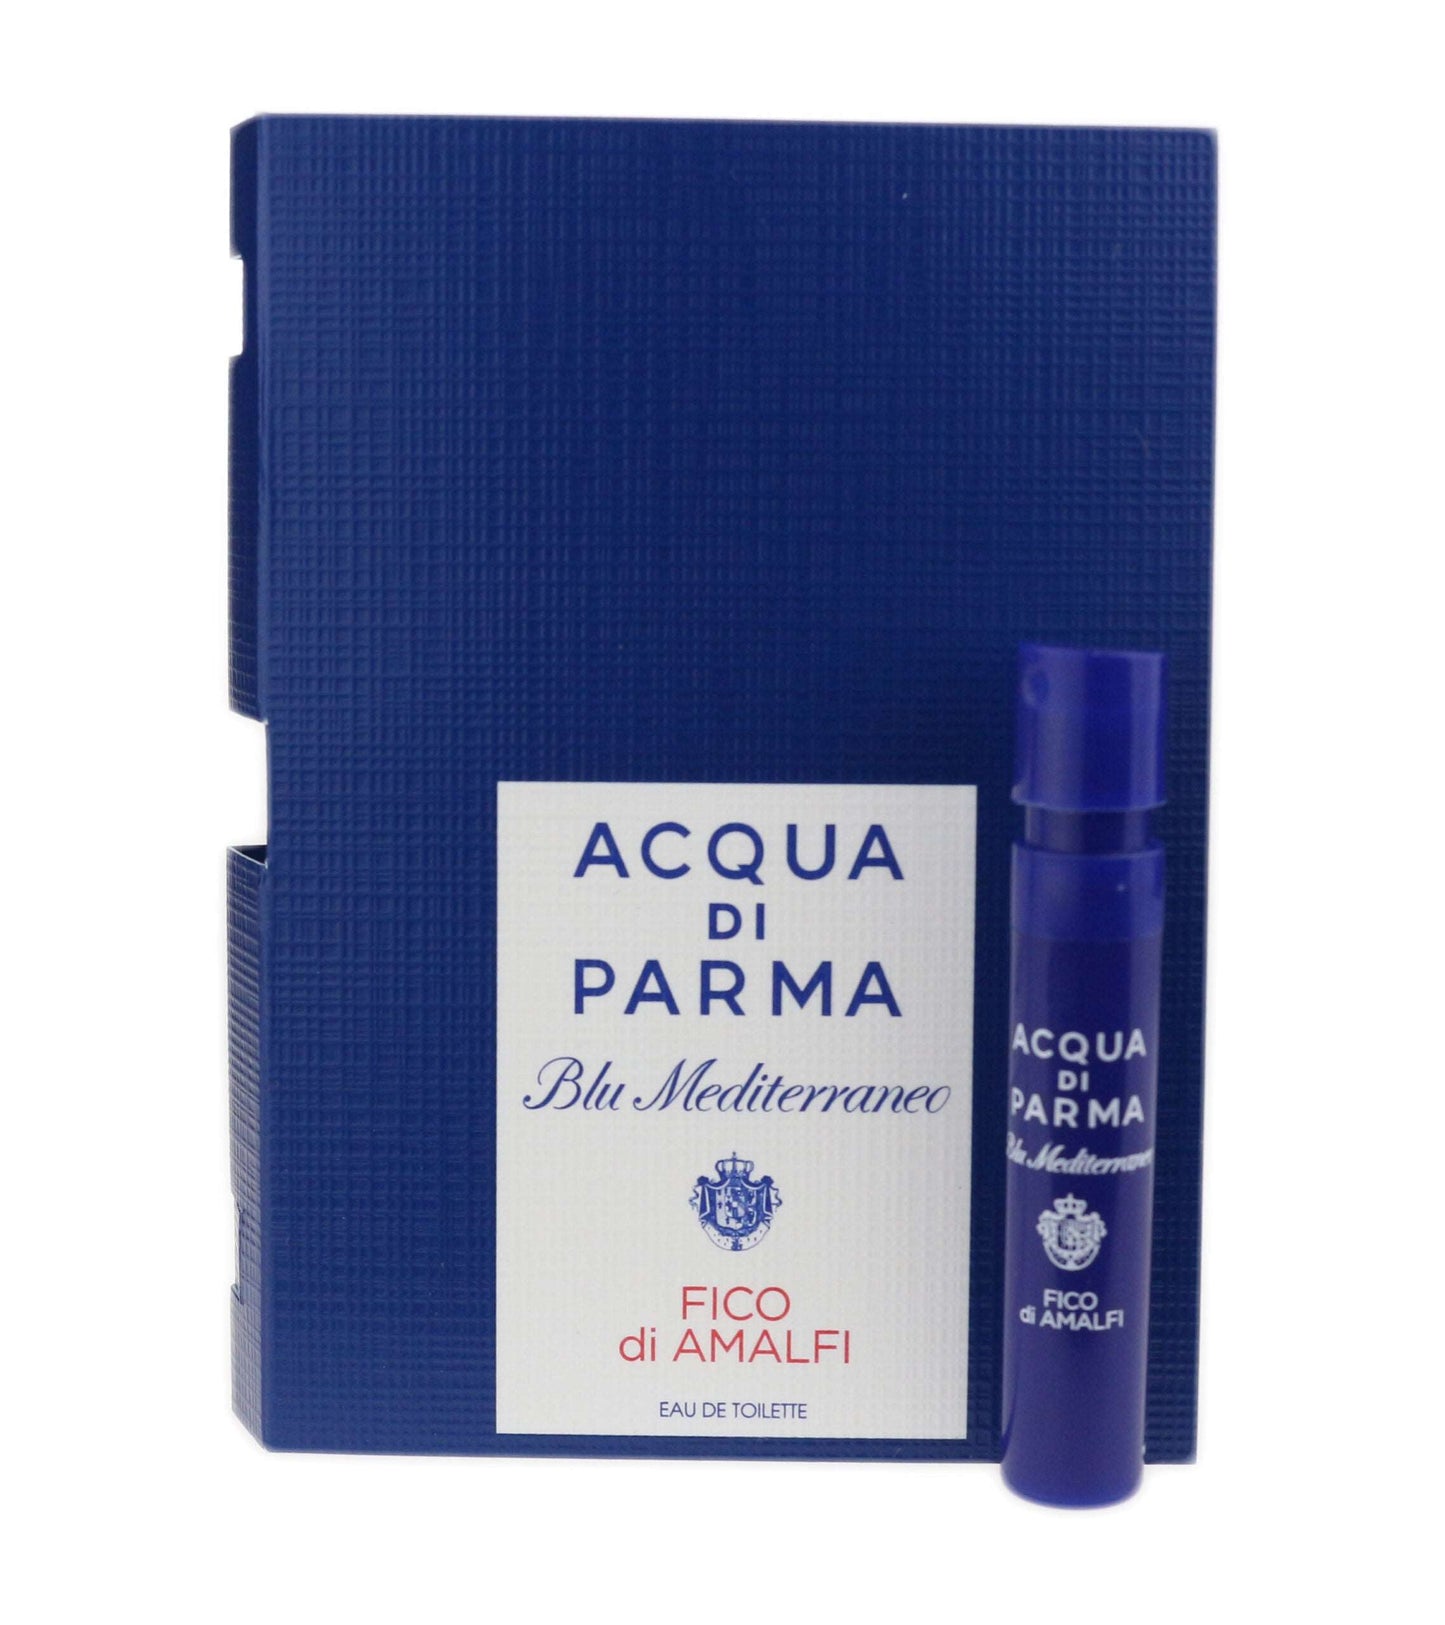 Acqua Di Parma Fico Di Amalfi 1.2ml-0.04 fl.oz. oficiální vzorky parfémů